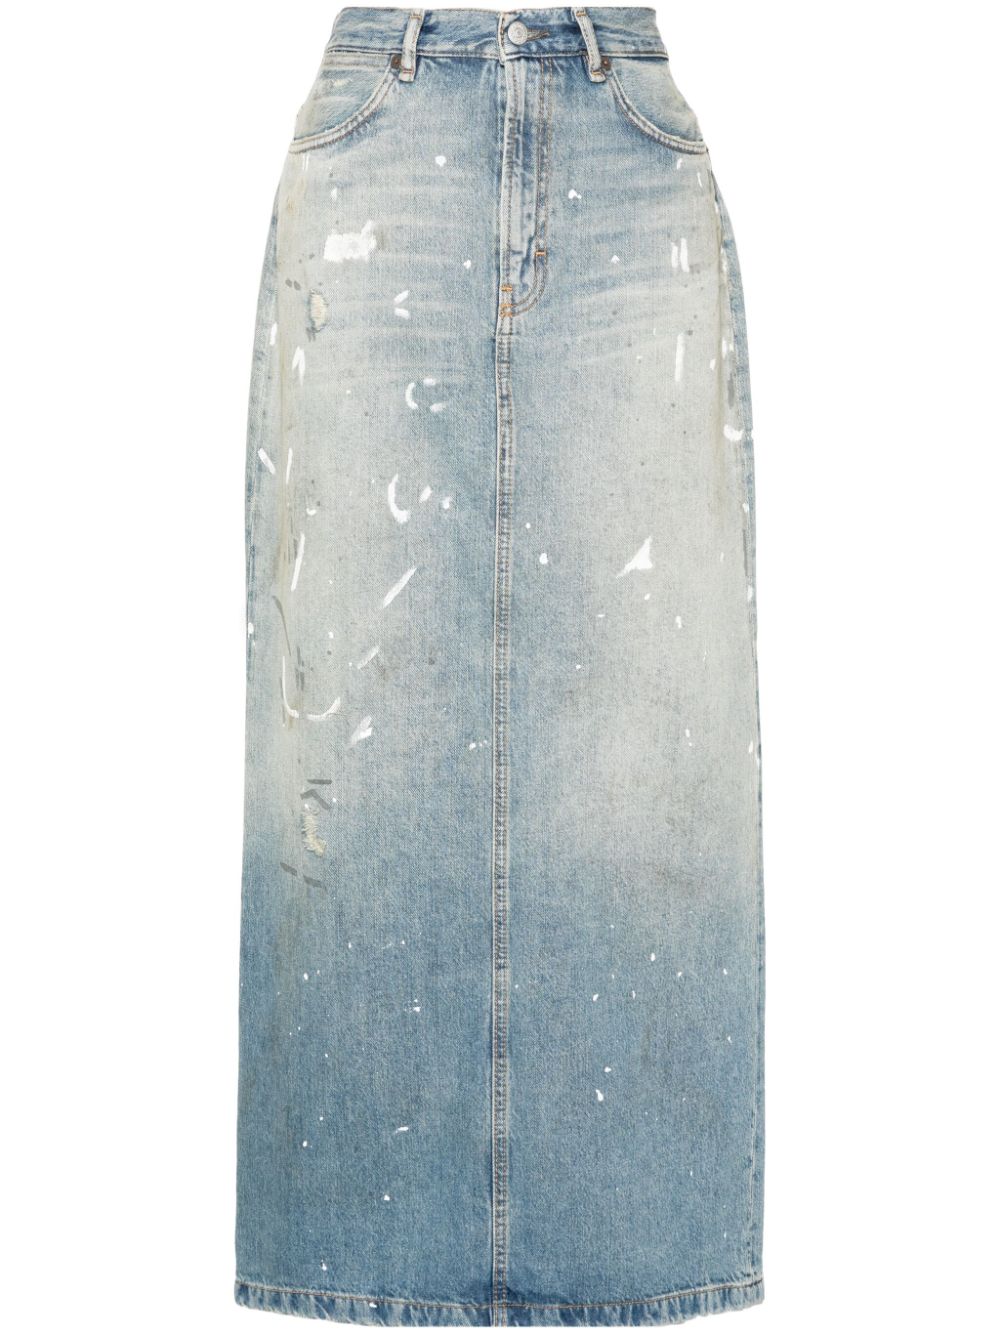 Light blue cotton-lyocell blend denim skirt